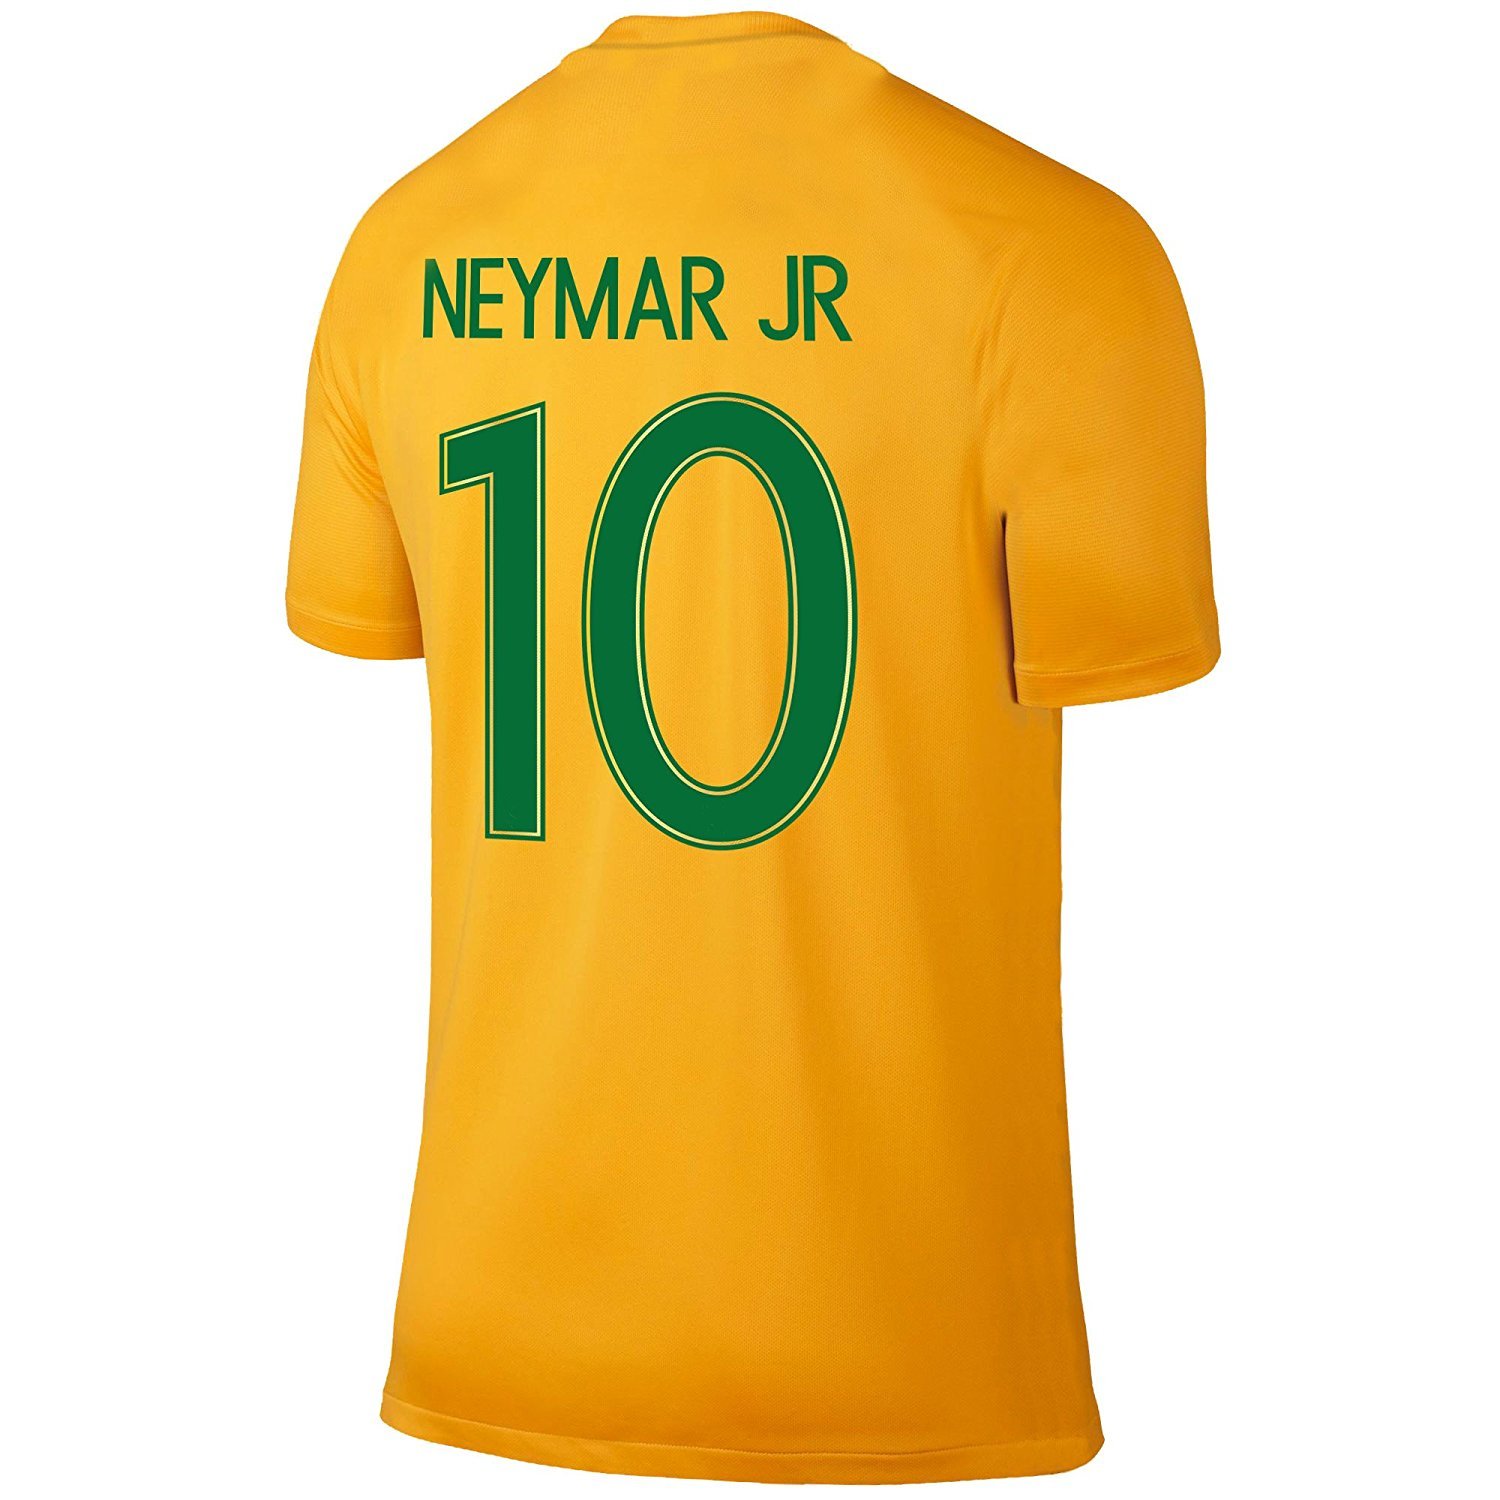 Neymar Jersey Style T-shirt Kids Neymar Jr Jersey Brazil T-shirt Gift